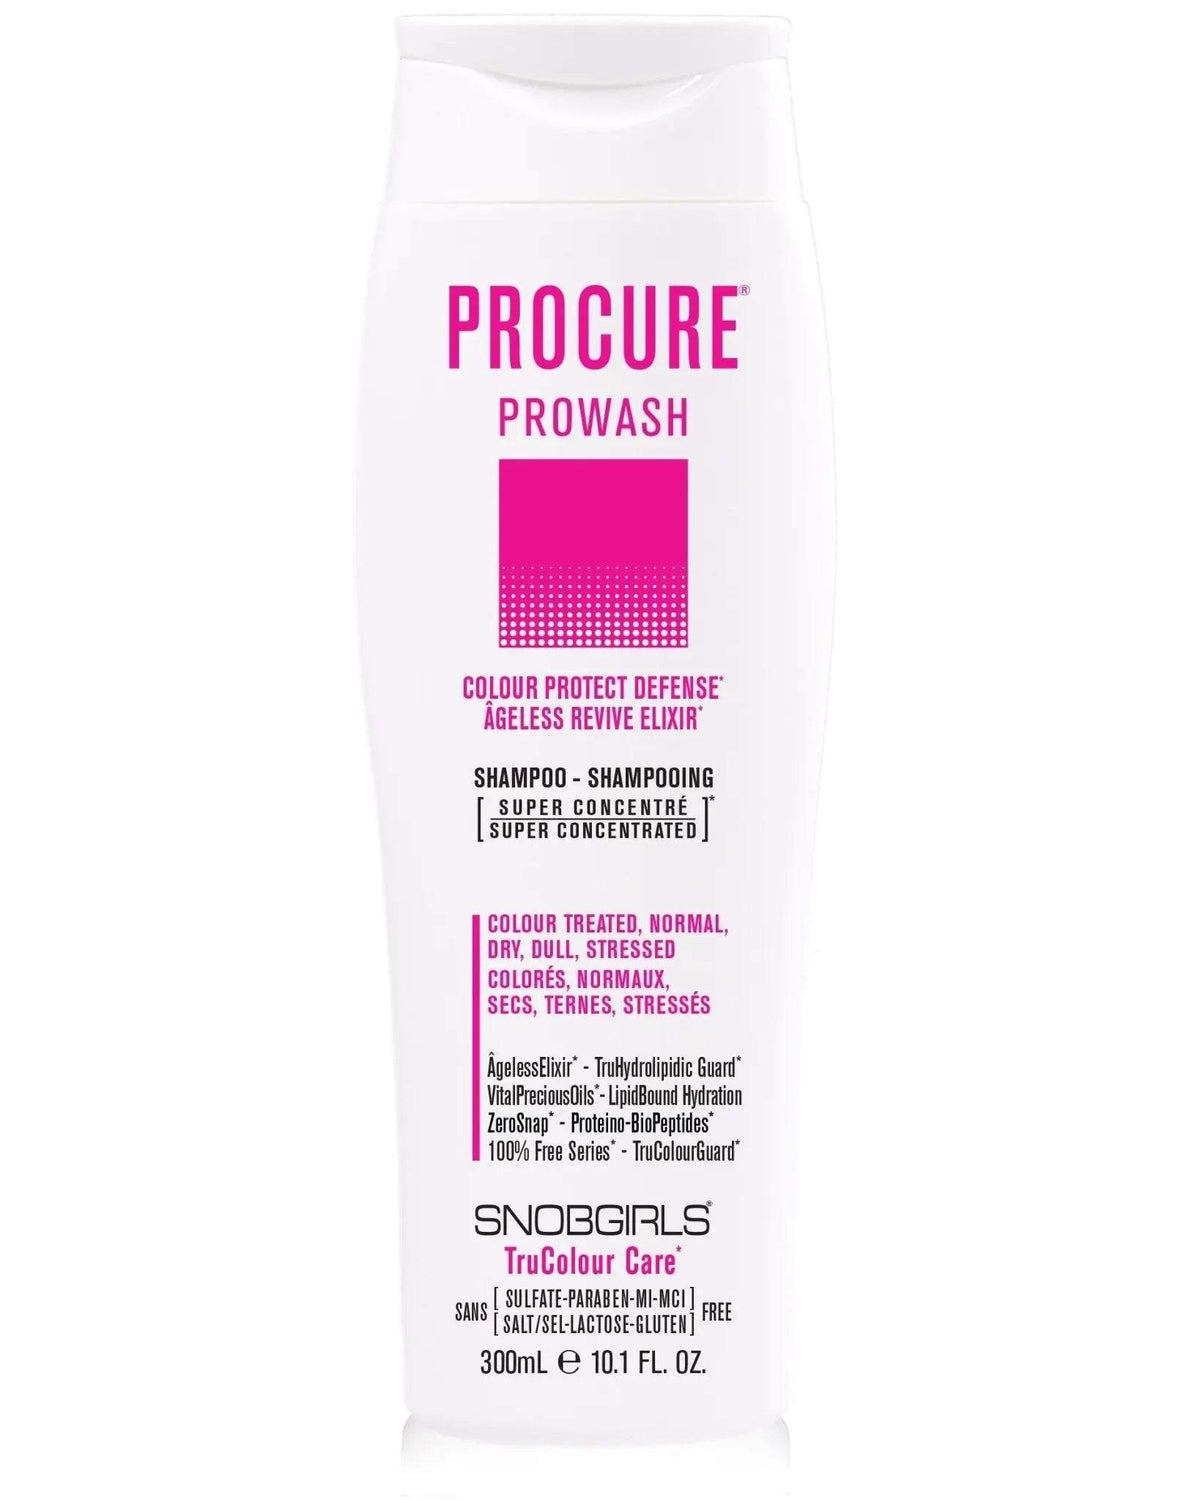 PROCURE Prowash Vegan Hair Shampoo - SNOBGIRLS.com